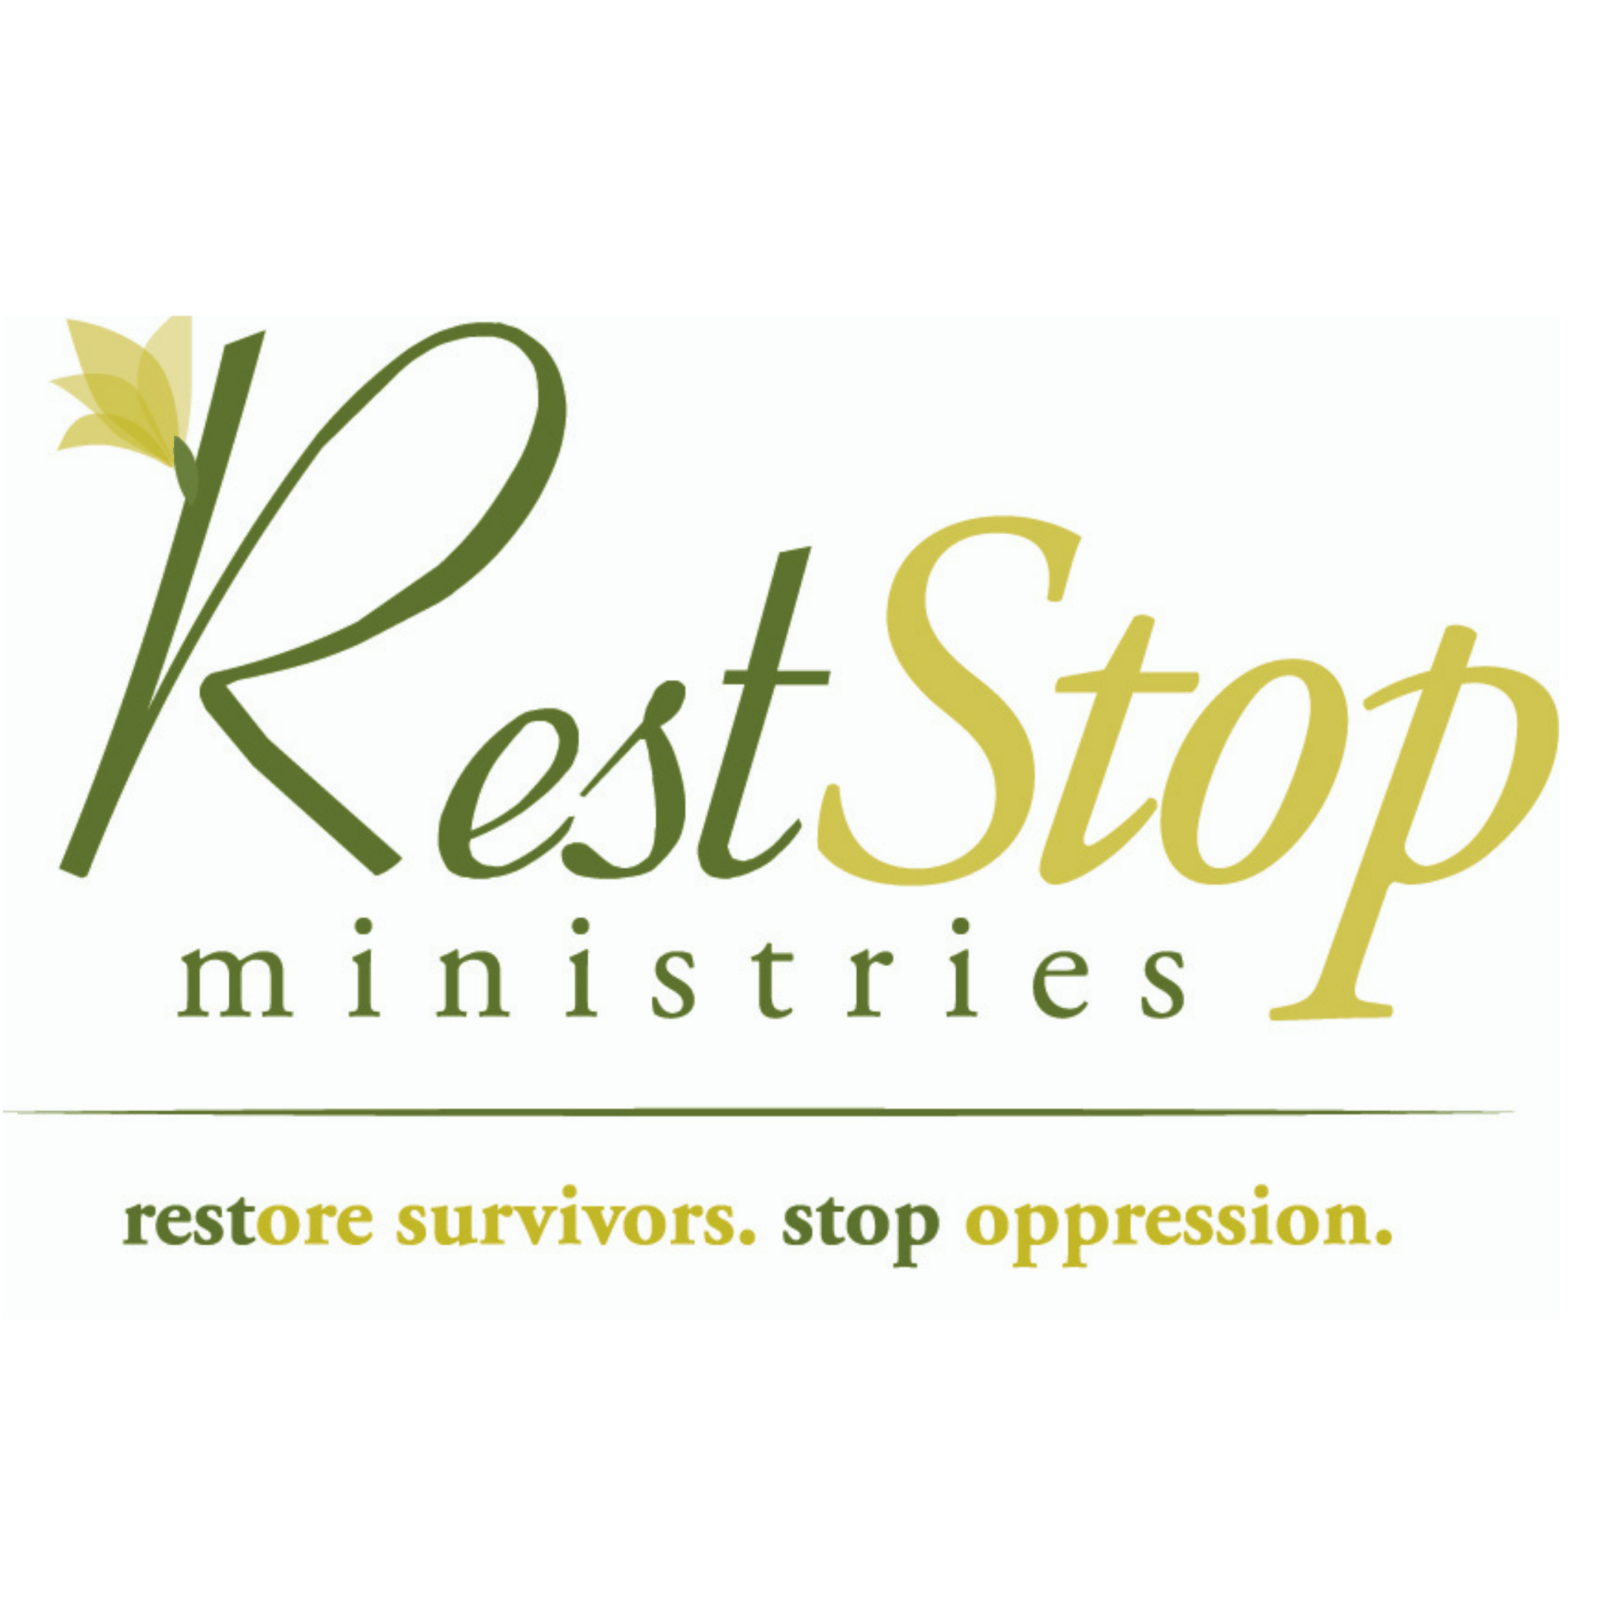 Rest Stop Ministries RESTORE SURVIVORS